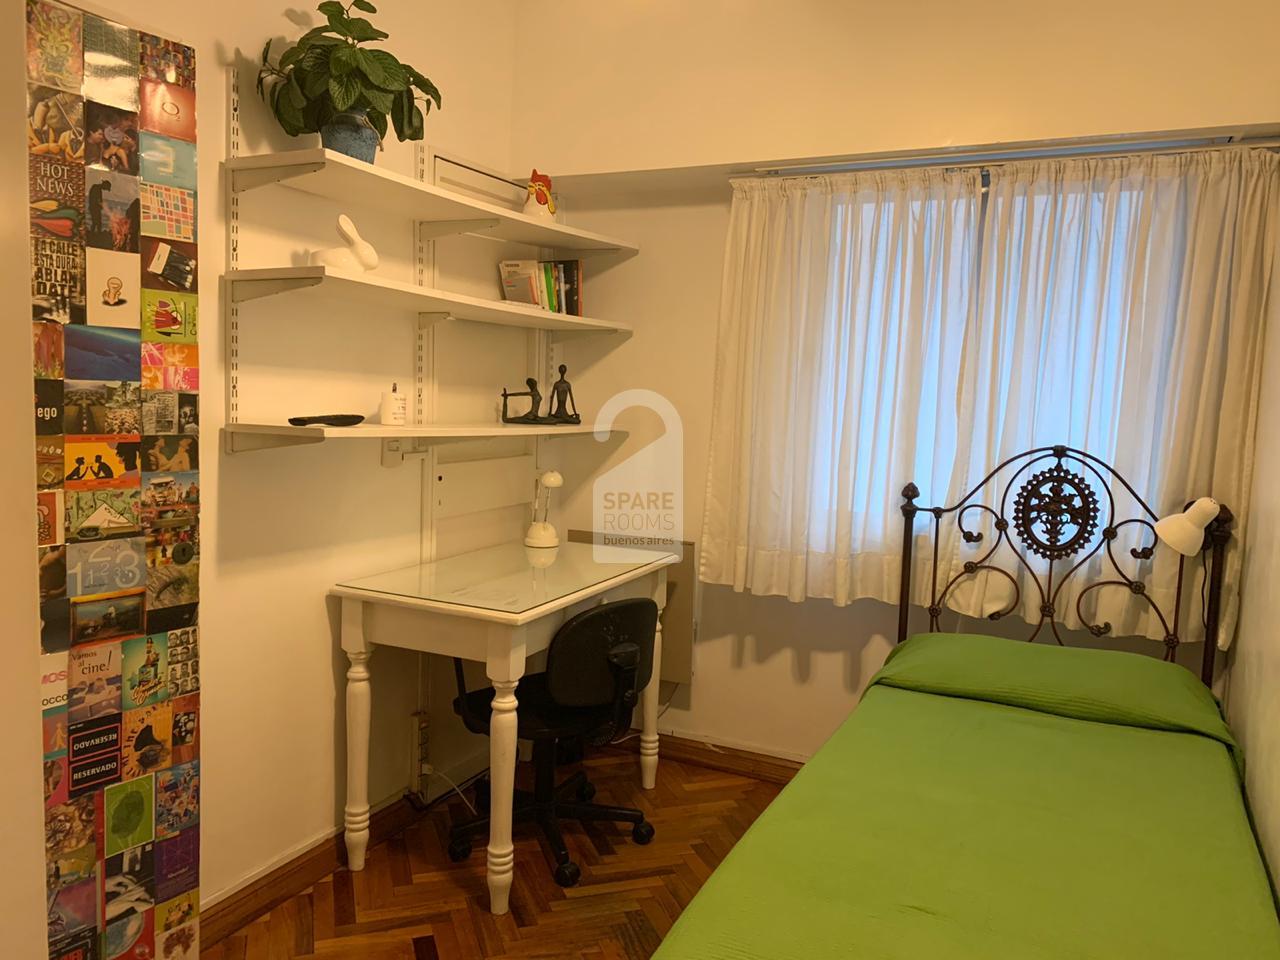 Alquiler De Habitaciones En Buenos Aires Spare Rooms Buenos Aires